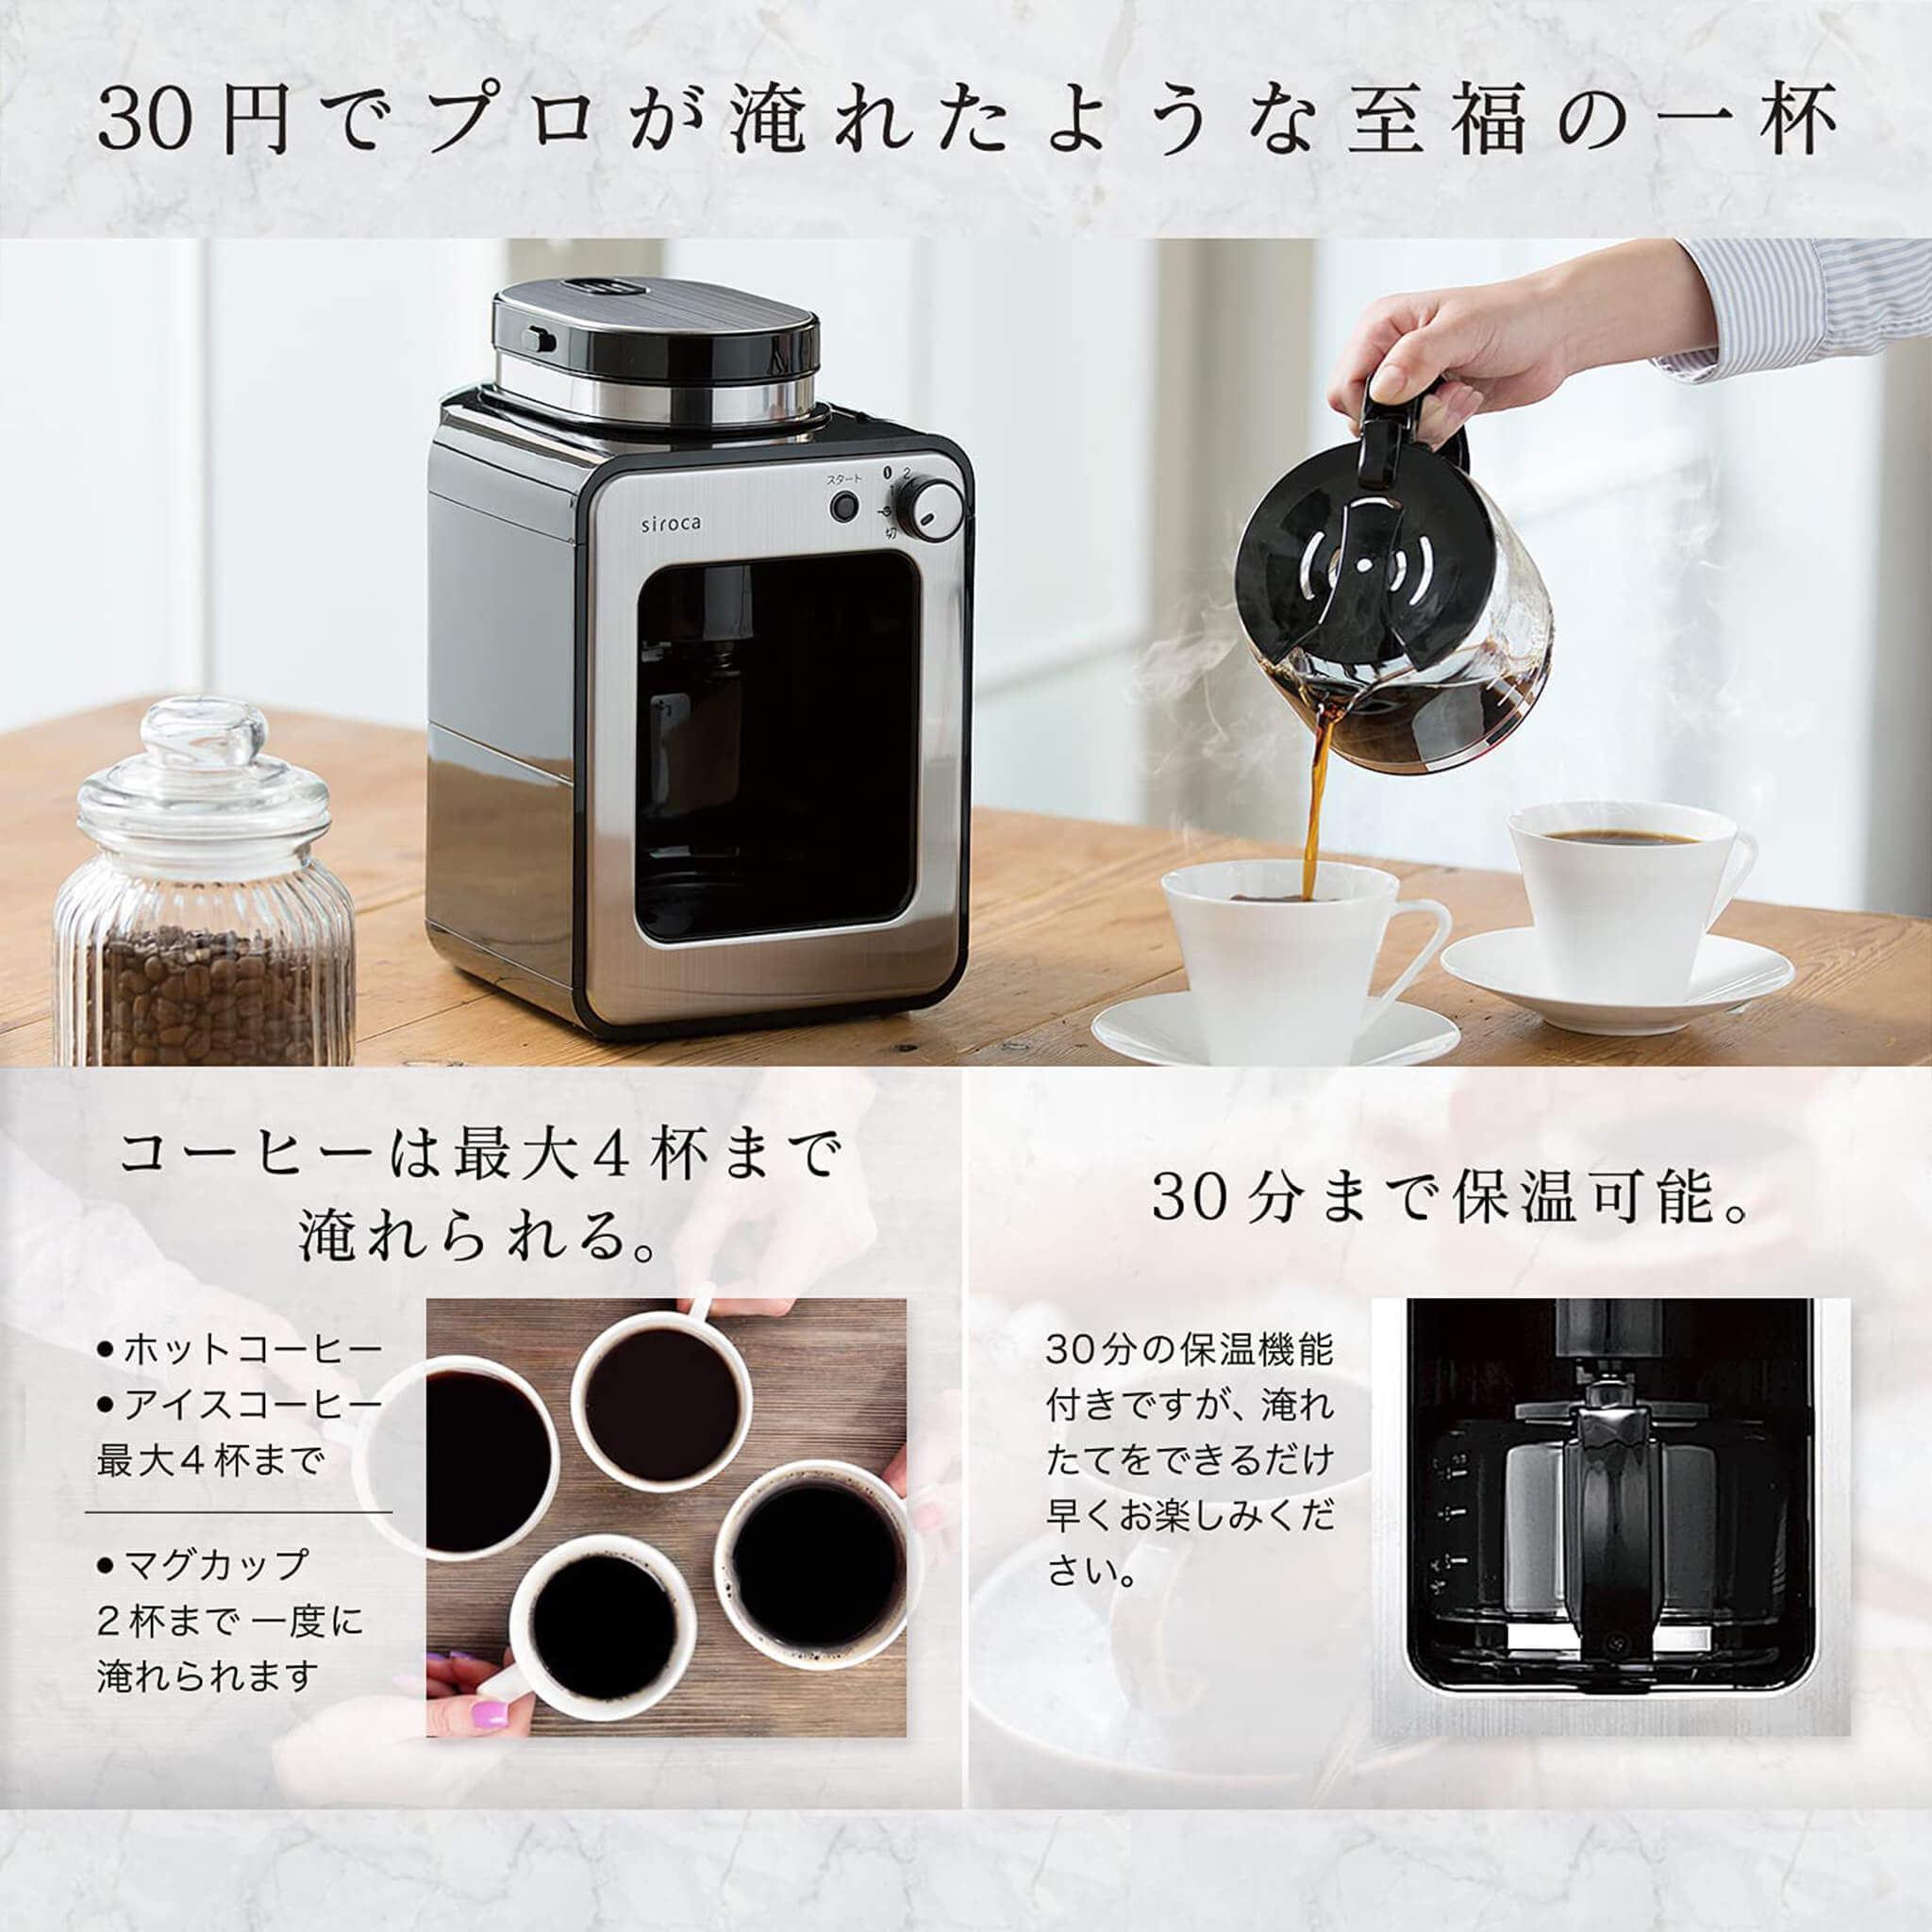 シロカ 全自動コーヒーメーカー SC-A211(1台)調理家電